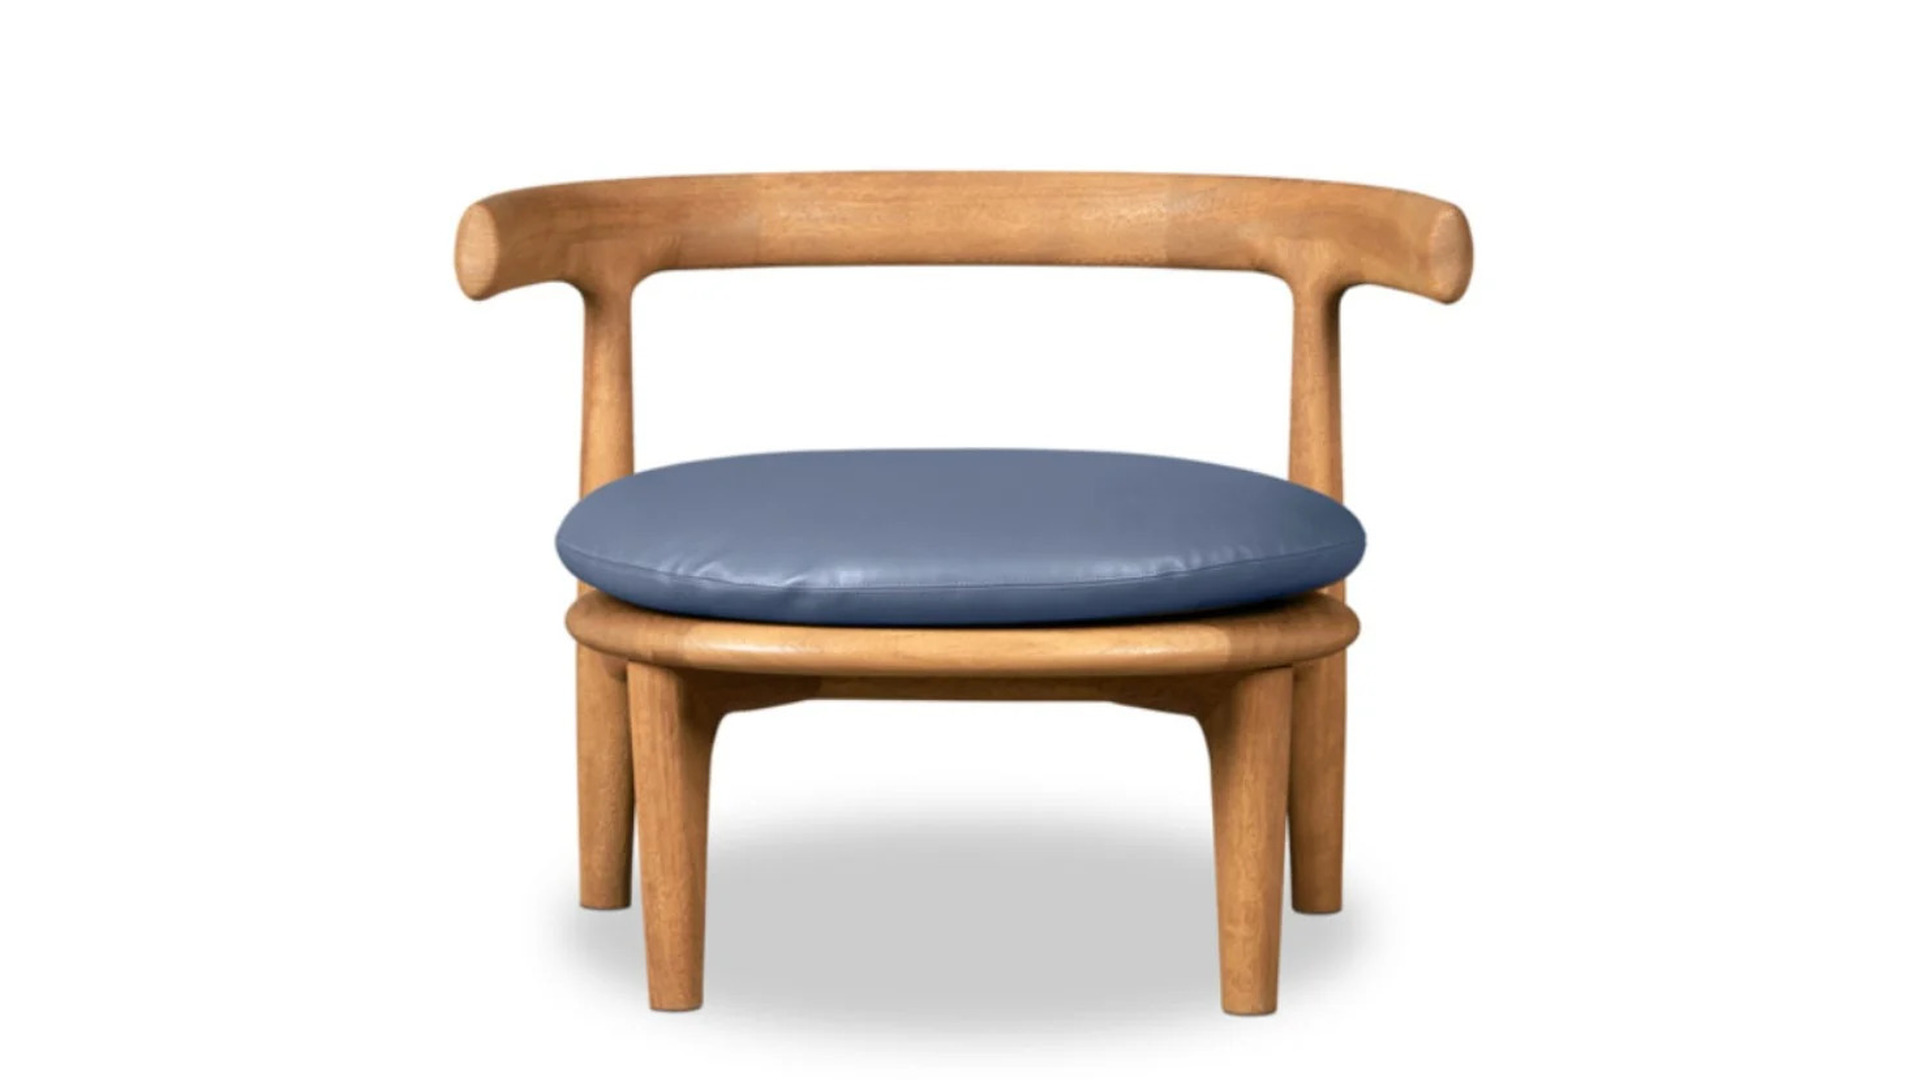 HORA Barneveld Baxter Himba fauteuil armstoel arm stoel easy chair 5.jpg